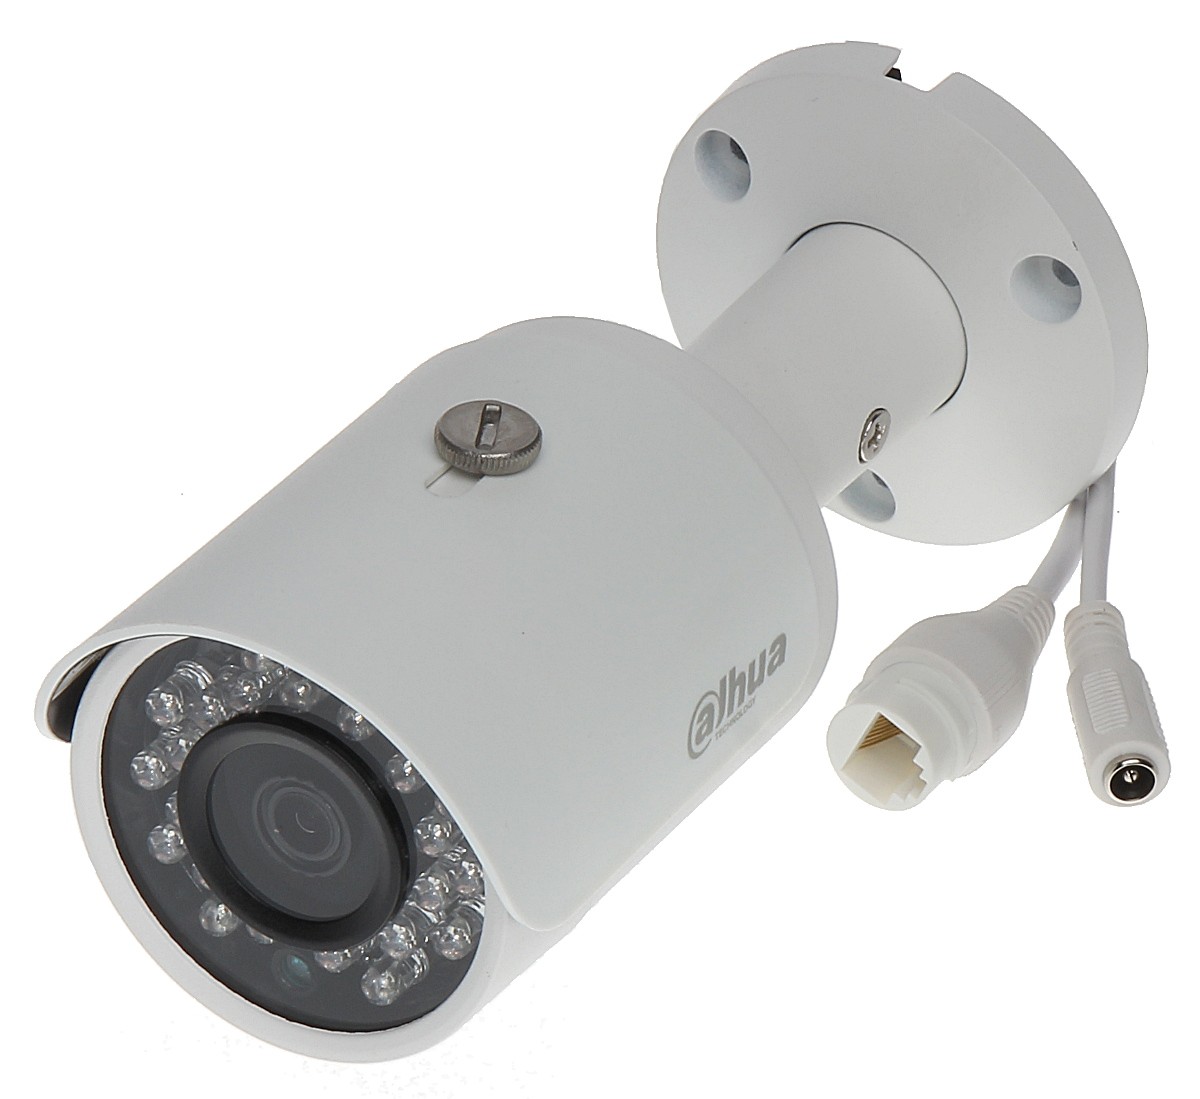 Dahua камеры купить. Dahua IPC-hfw1230sp. IPC-hfw1320sp-s3 Dahua. Сетевая камера Dahua DH-IPC-hfw1230sp-0280b. DH-IPC-hfw1220sp-0360b.